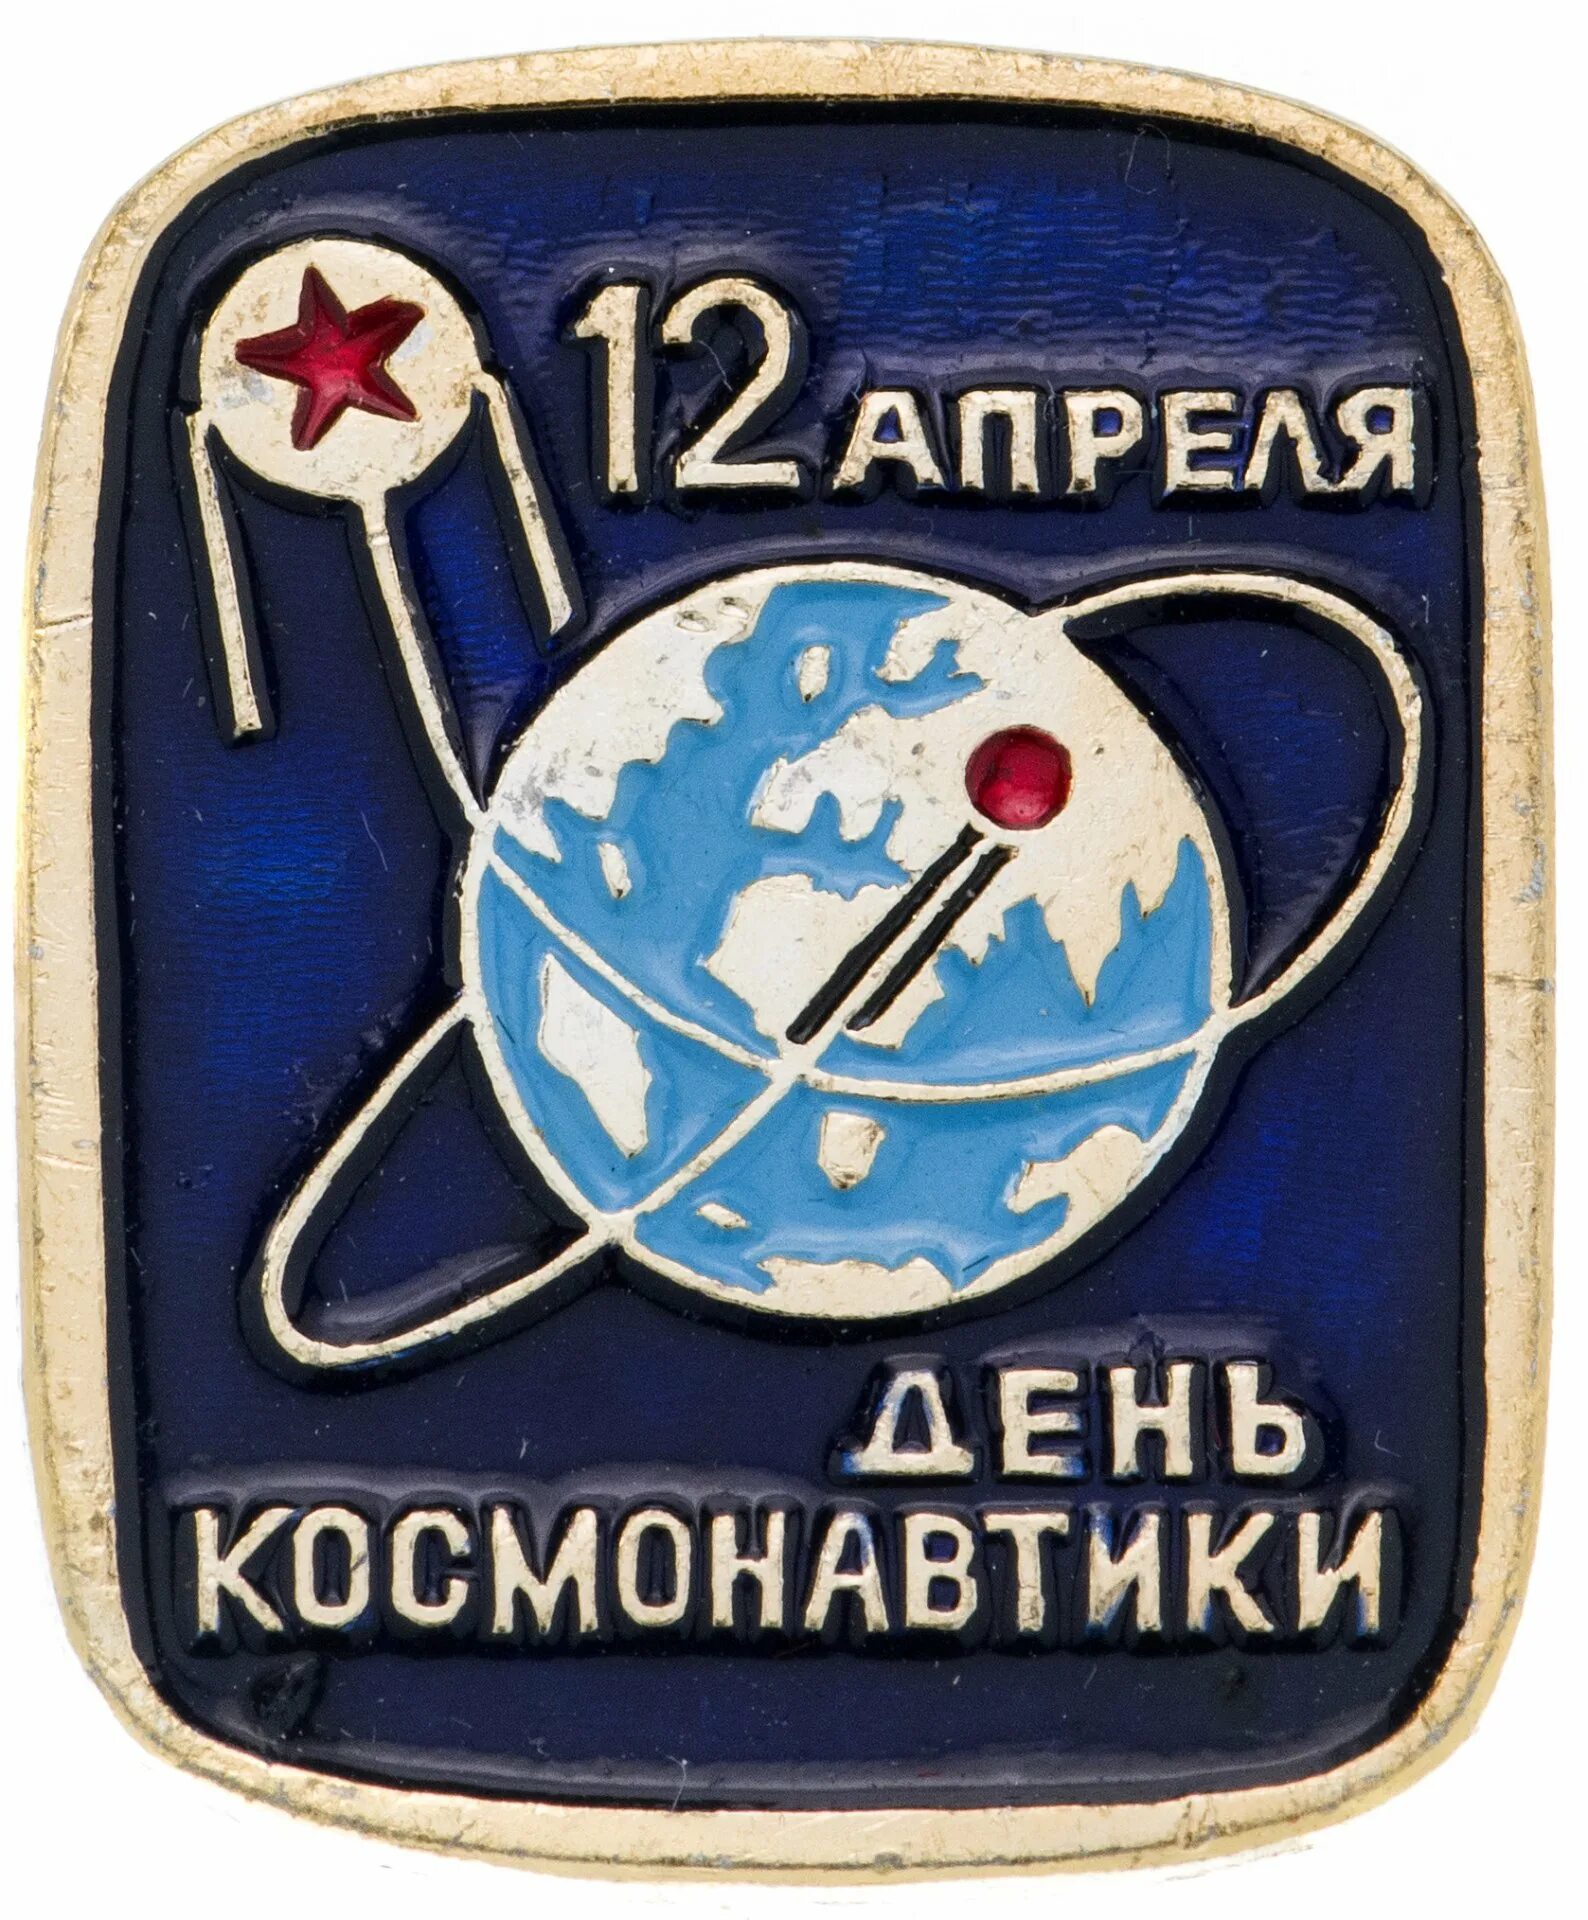 День космонавтики. Значок день космонавтики. Значки ко Дню космонавтики для детей. Значок 12 апреля день космонавтики.